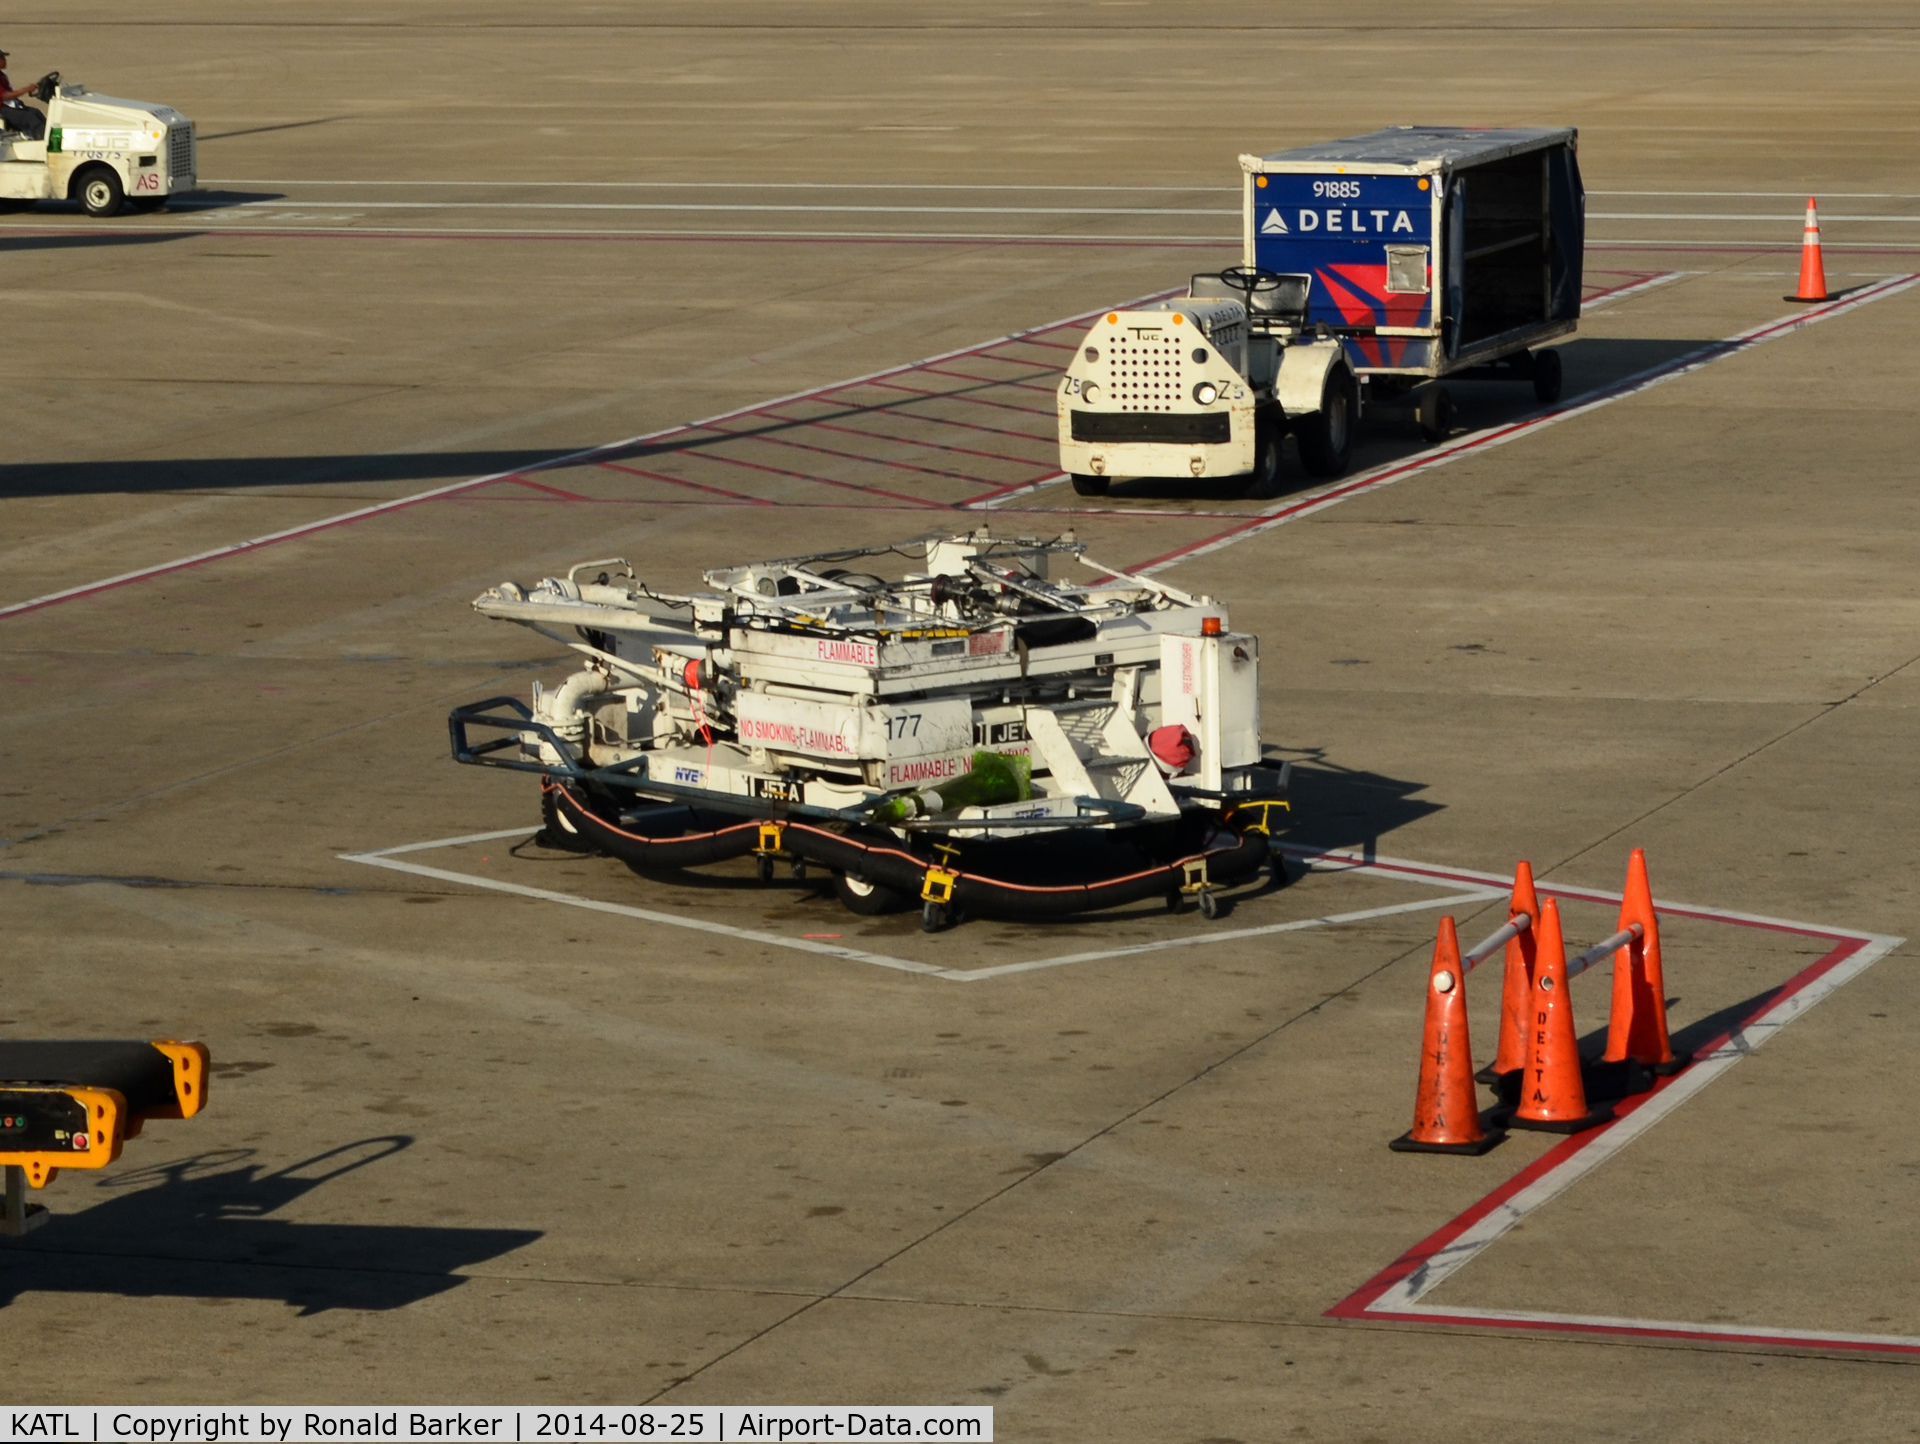 Hartsfield - Jackson Atlanta International Airport (ATL) - Fuel pump ATL